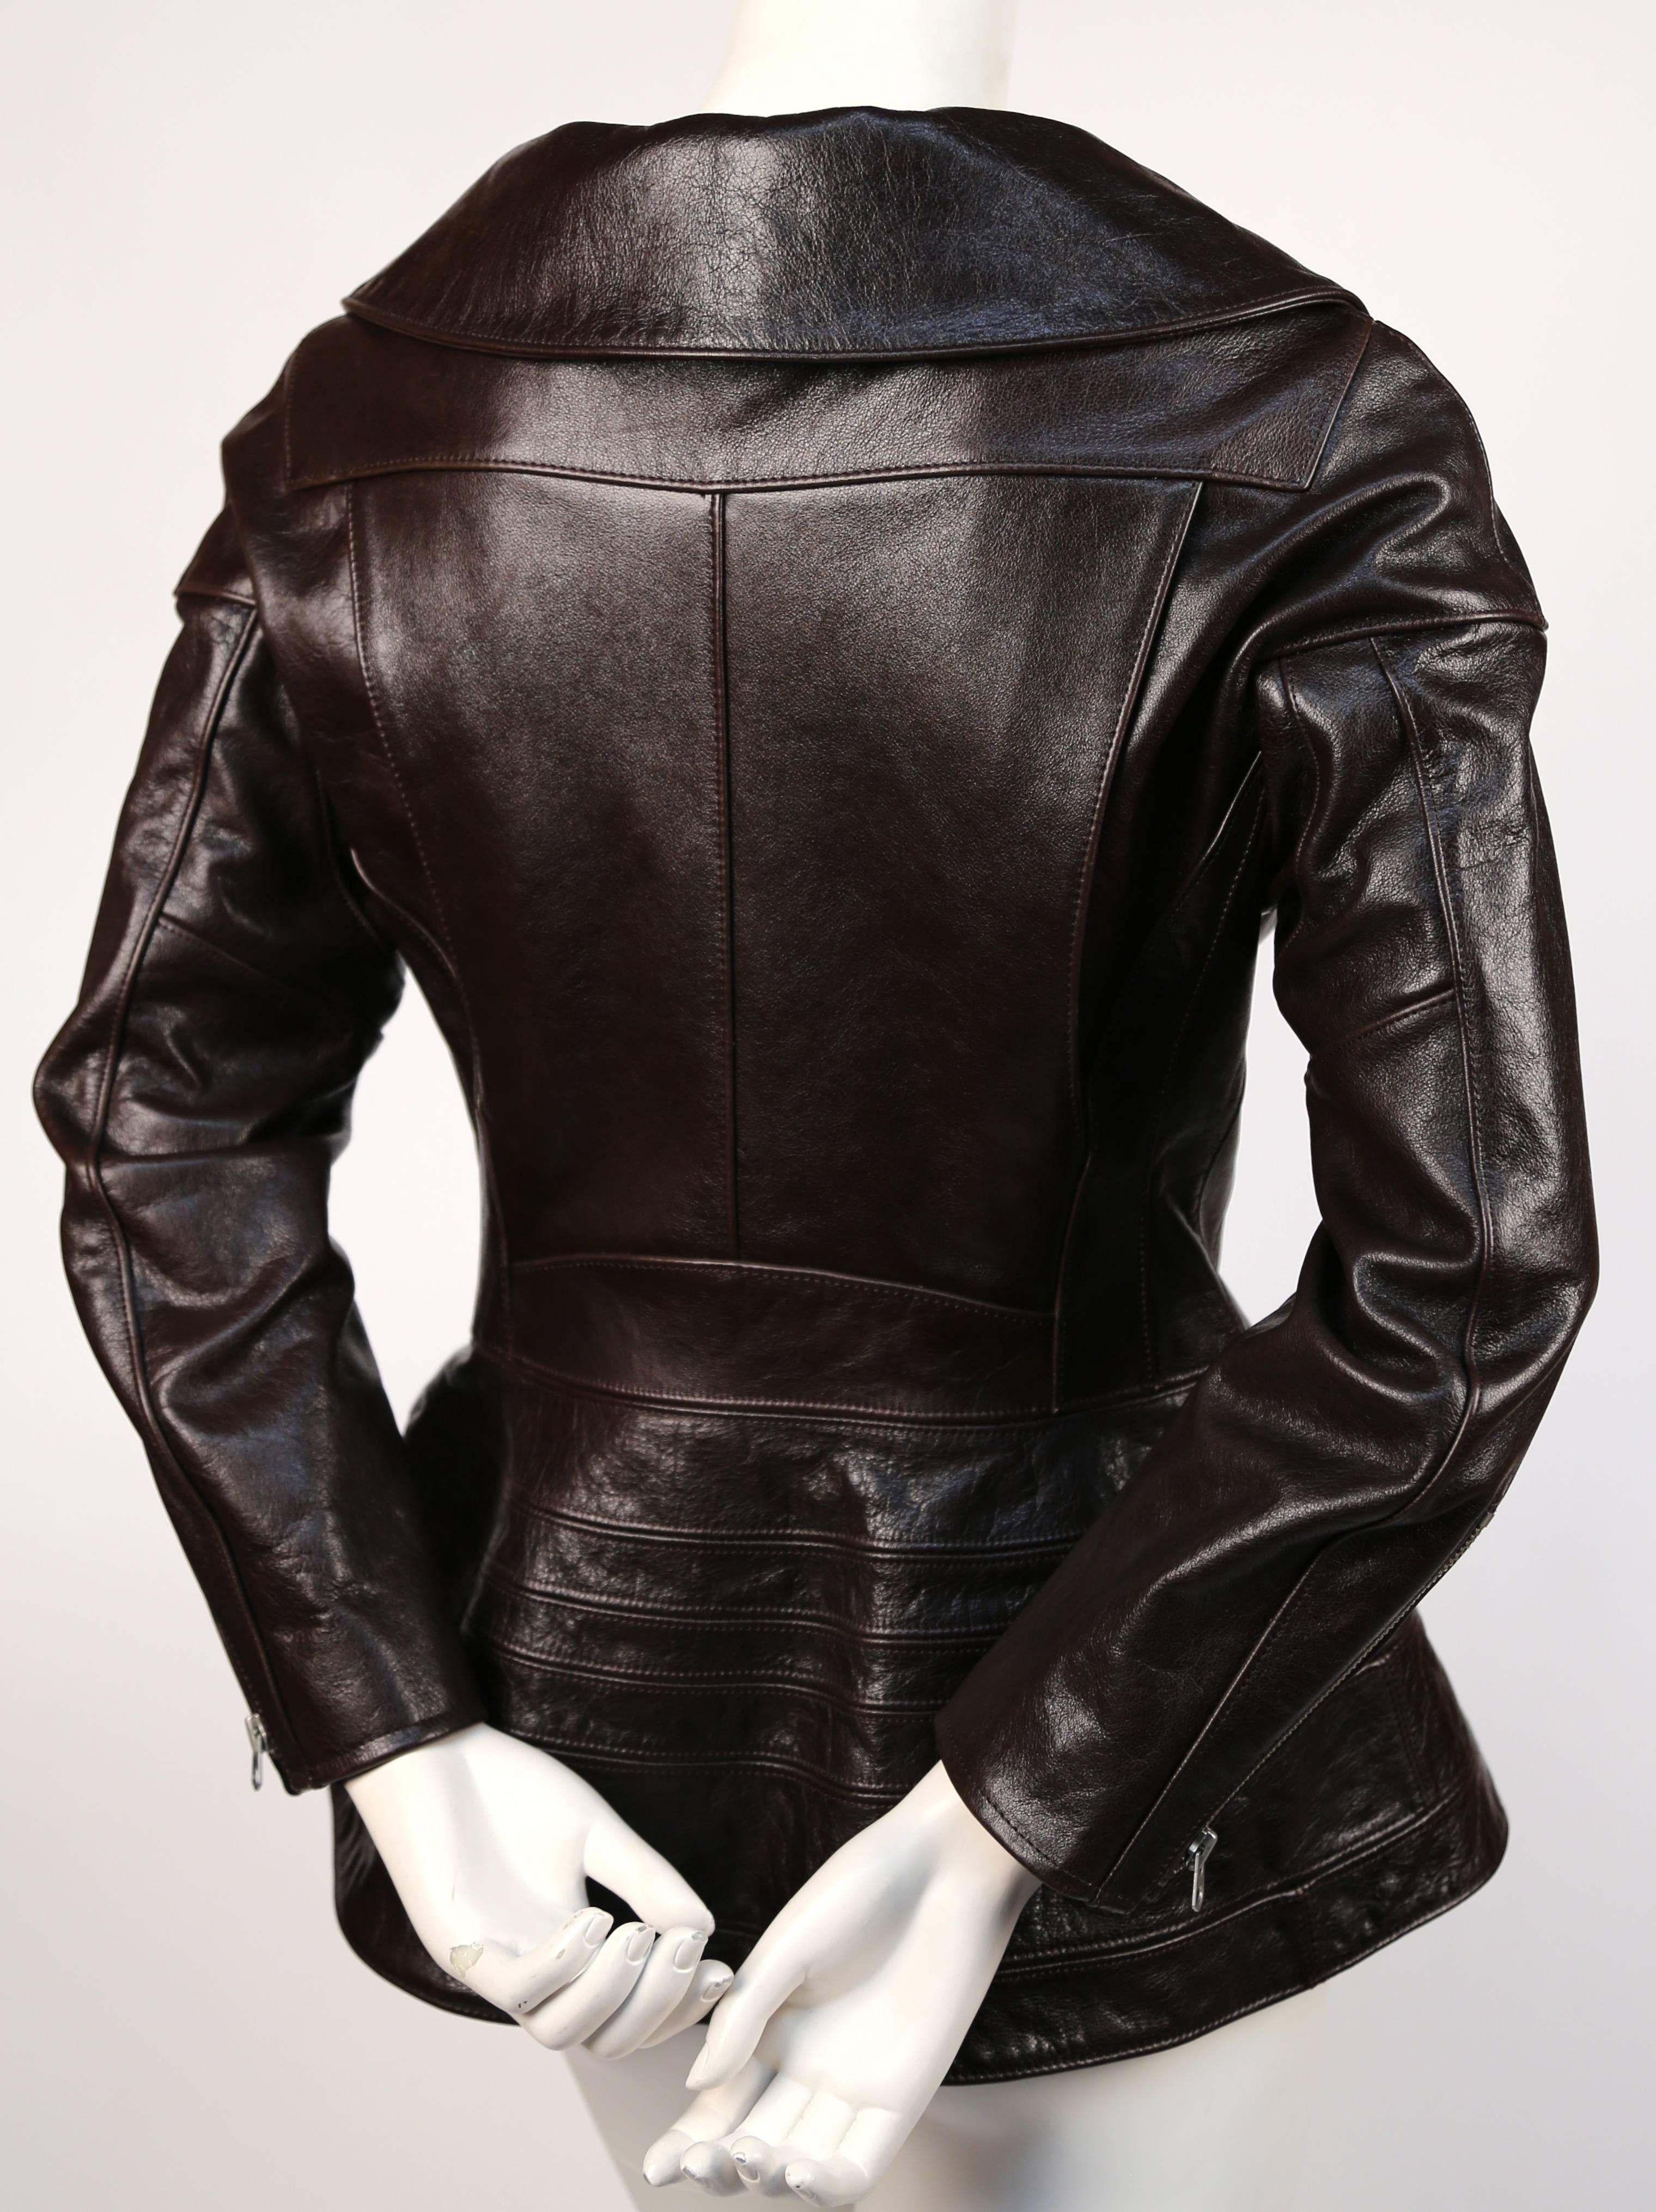 junya watanabe leather jacket